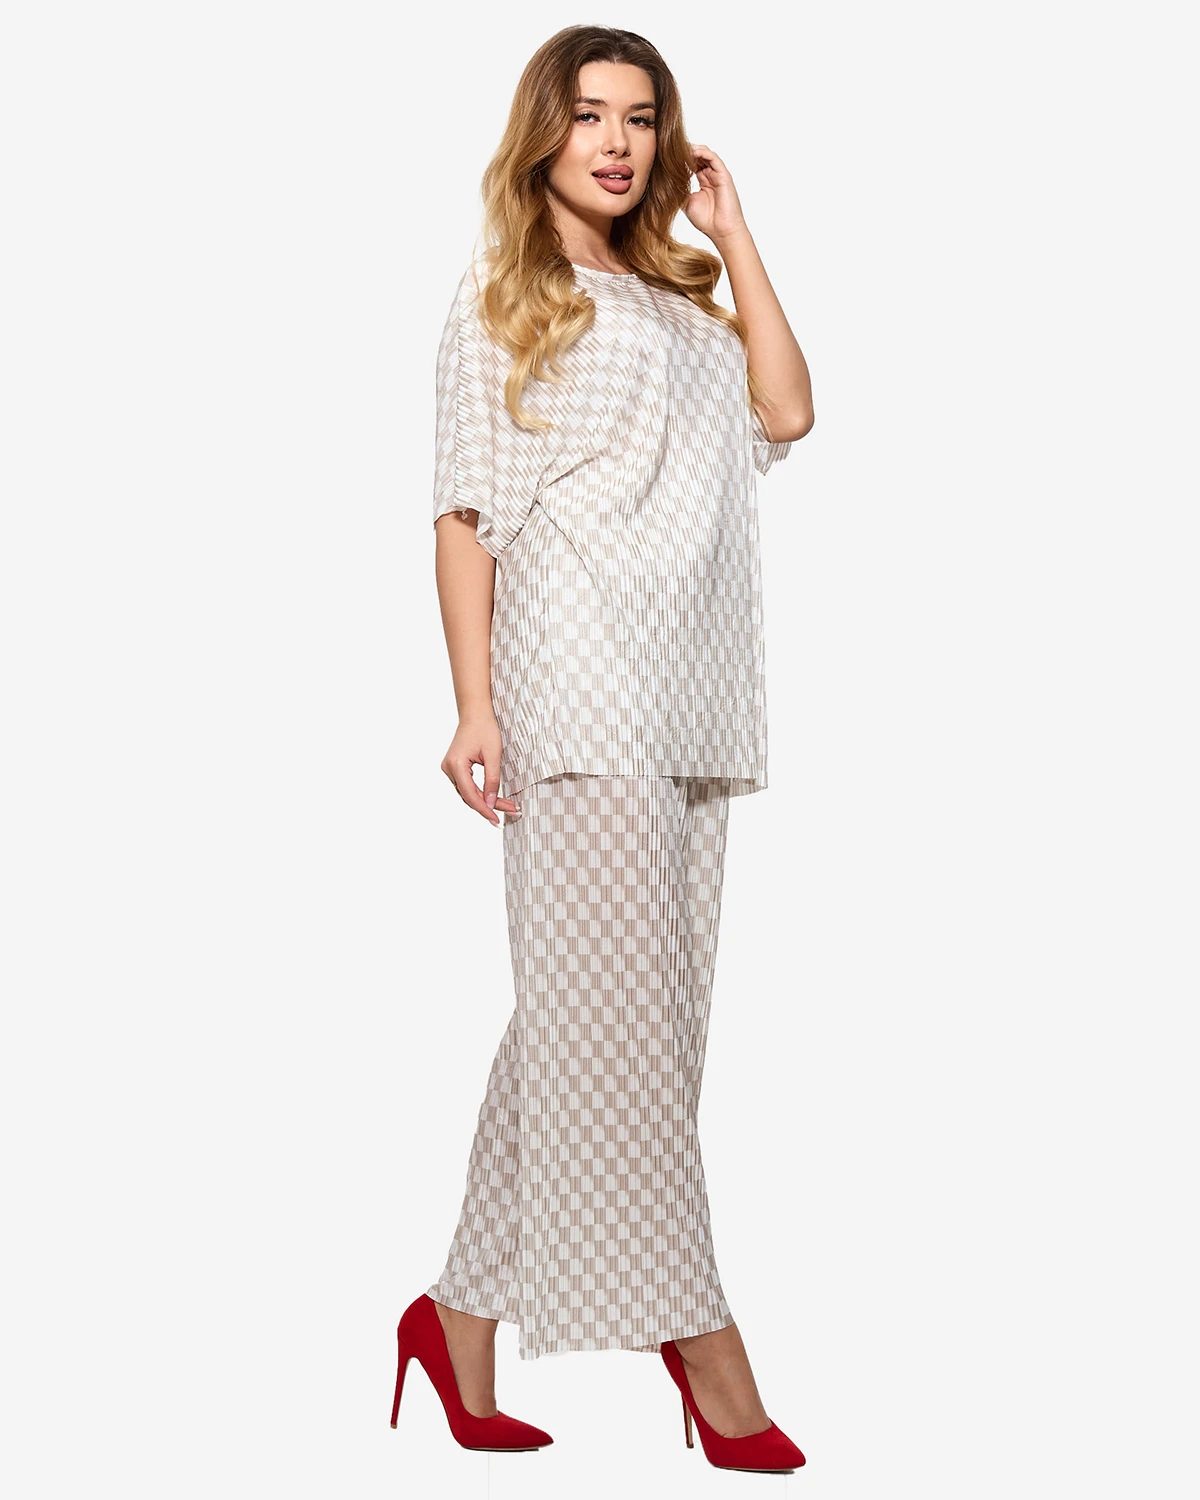 Béžový dámsky vzorovaný plisovaný komplet - Oblečenie